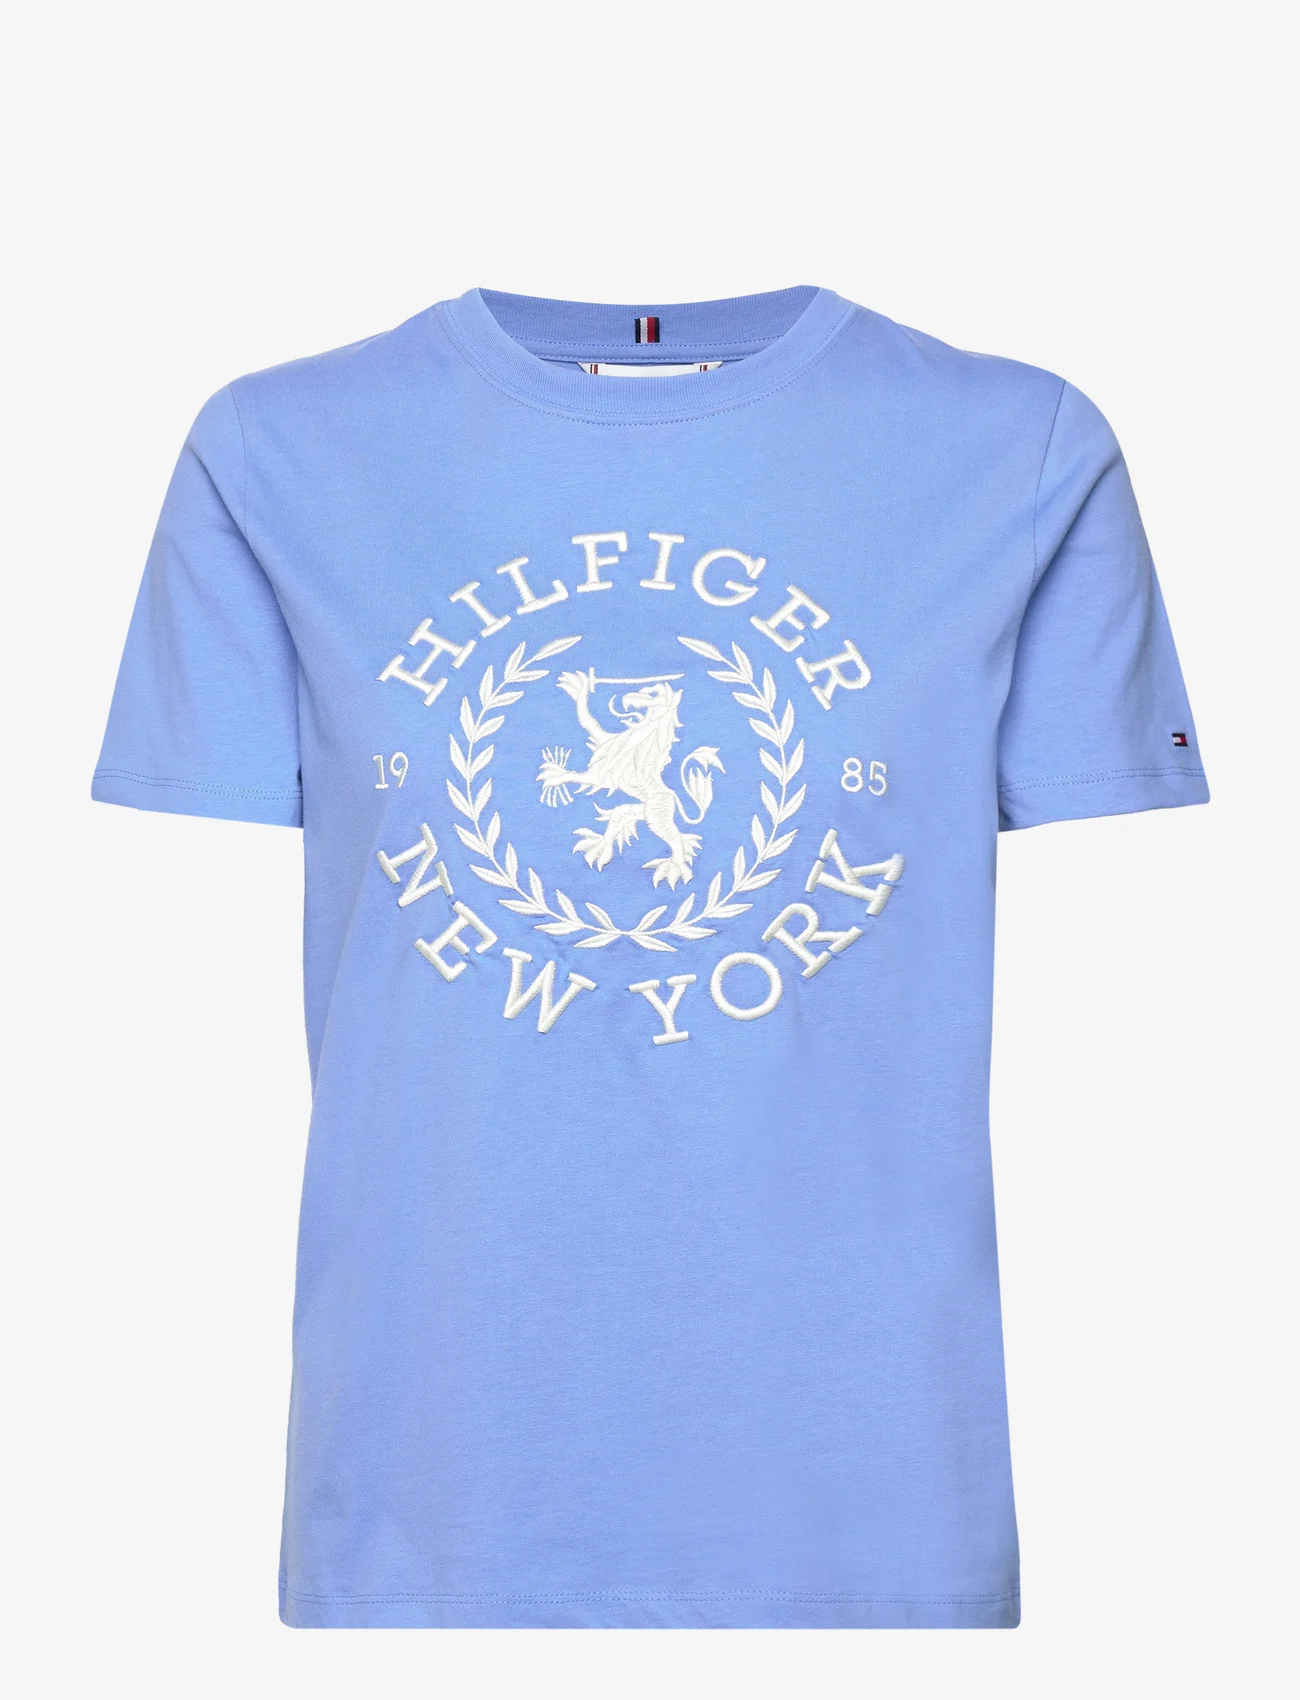 Tommy Hilfiger - REG CREST C-NK TEE SS - t-shirts - blue spell - 1